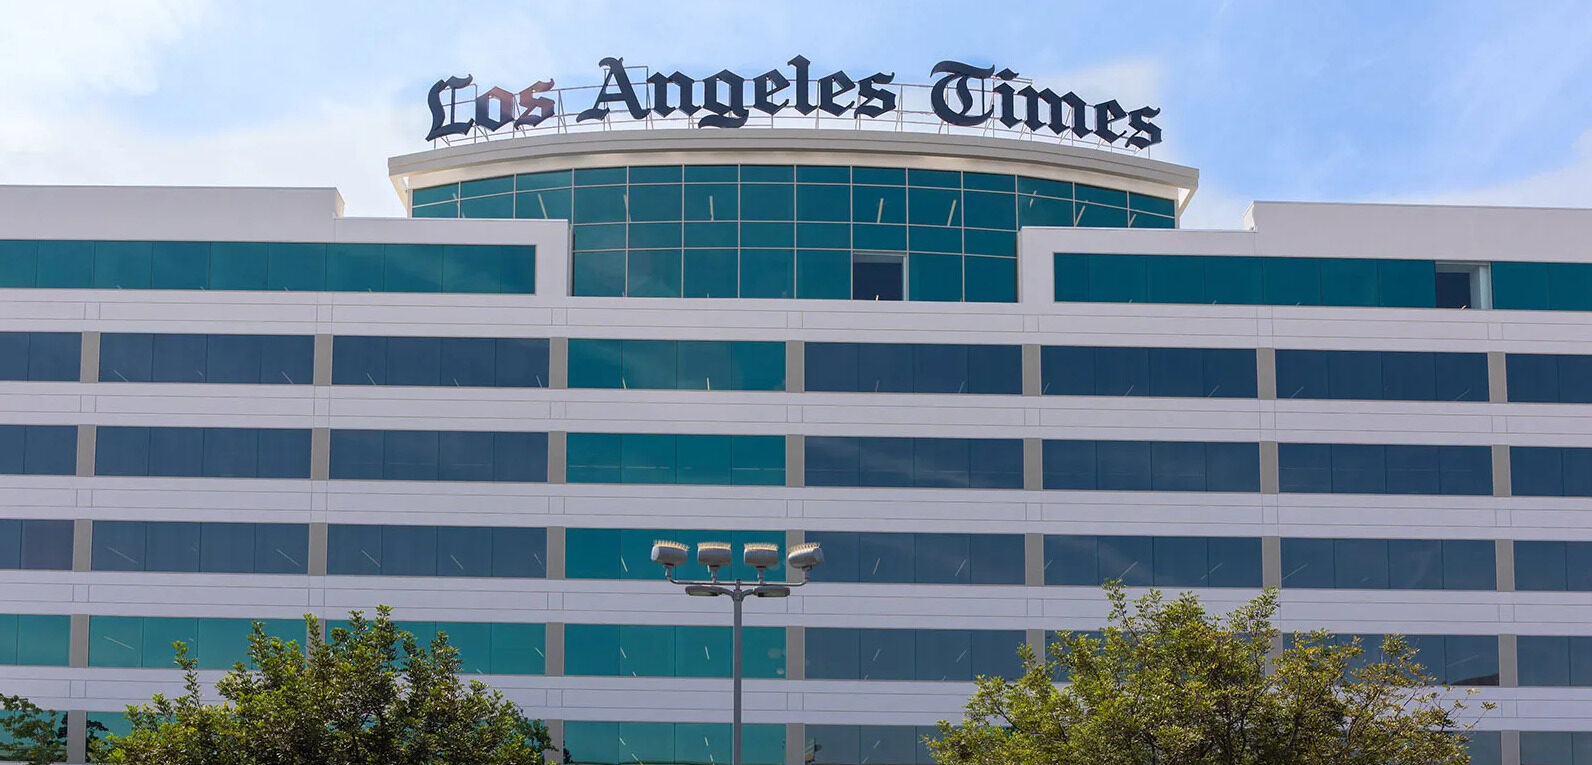 LA Times Building